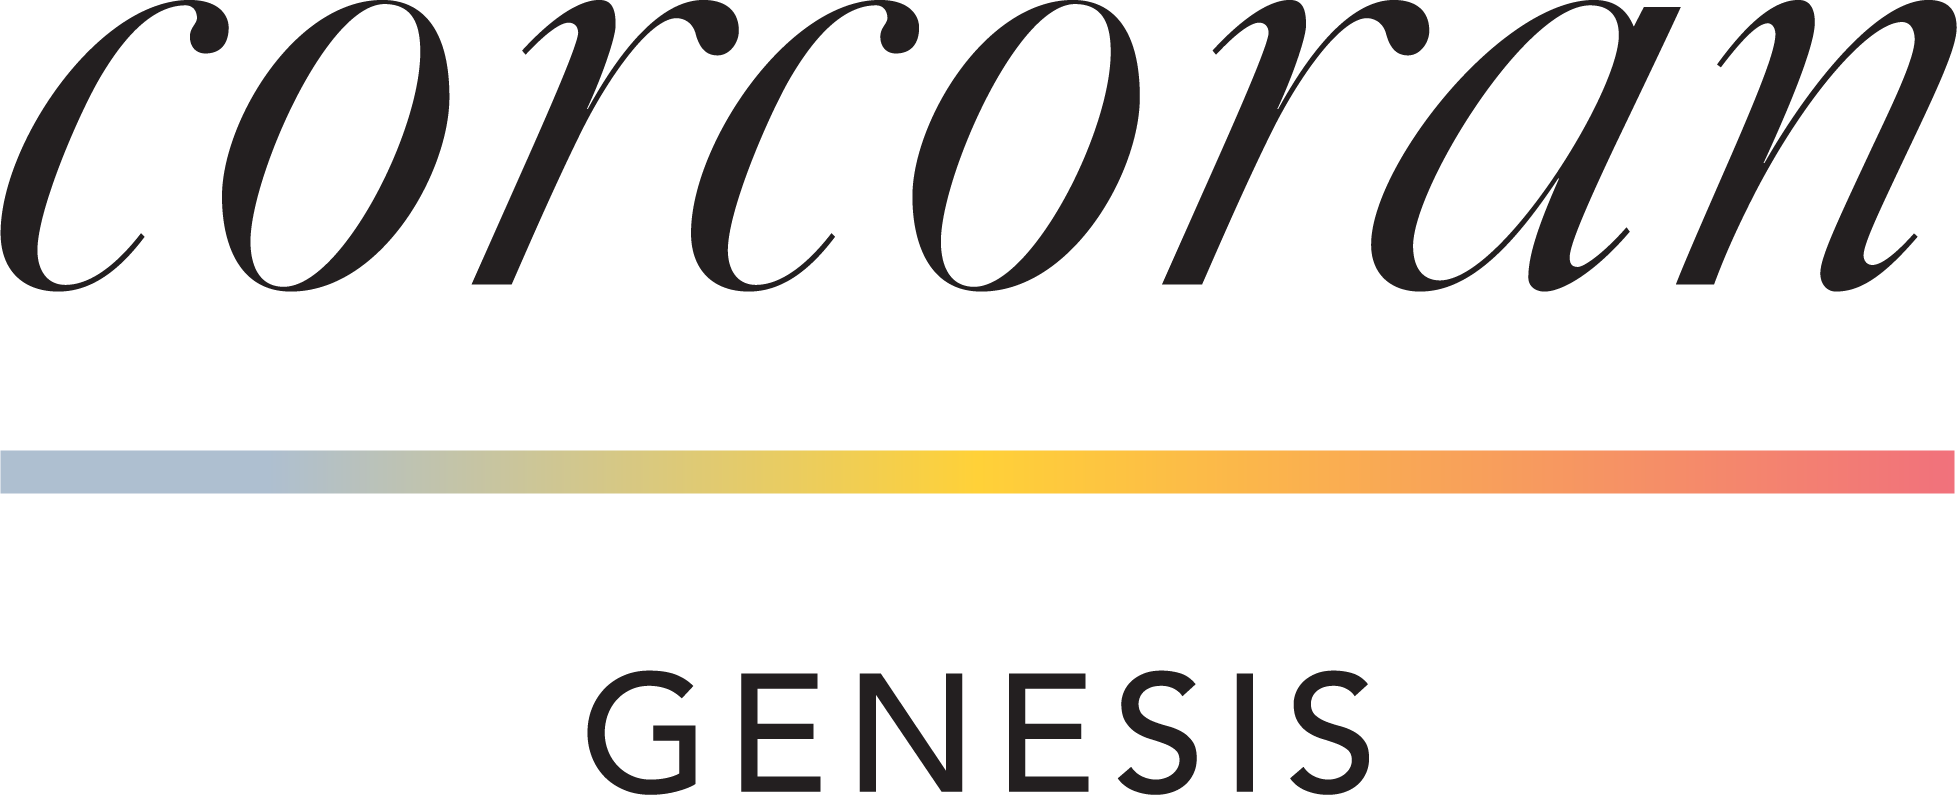 Corcoran Genesis logo